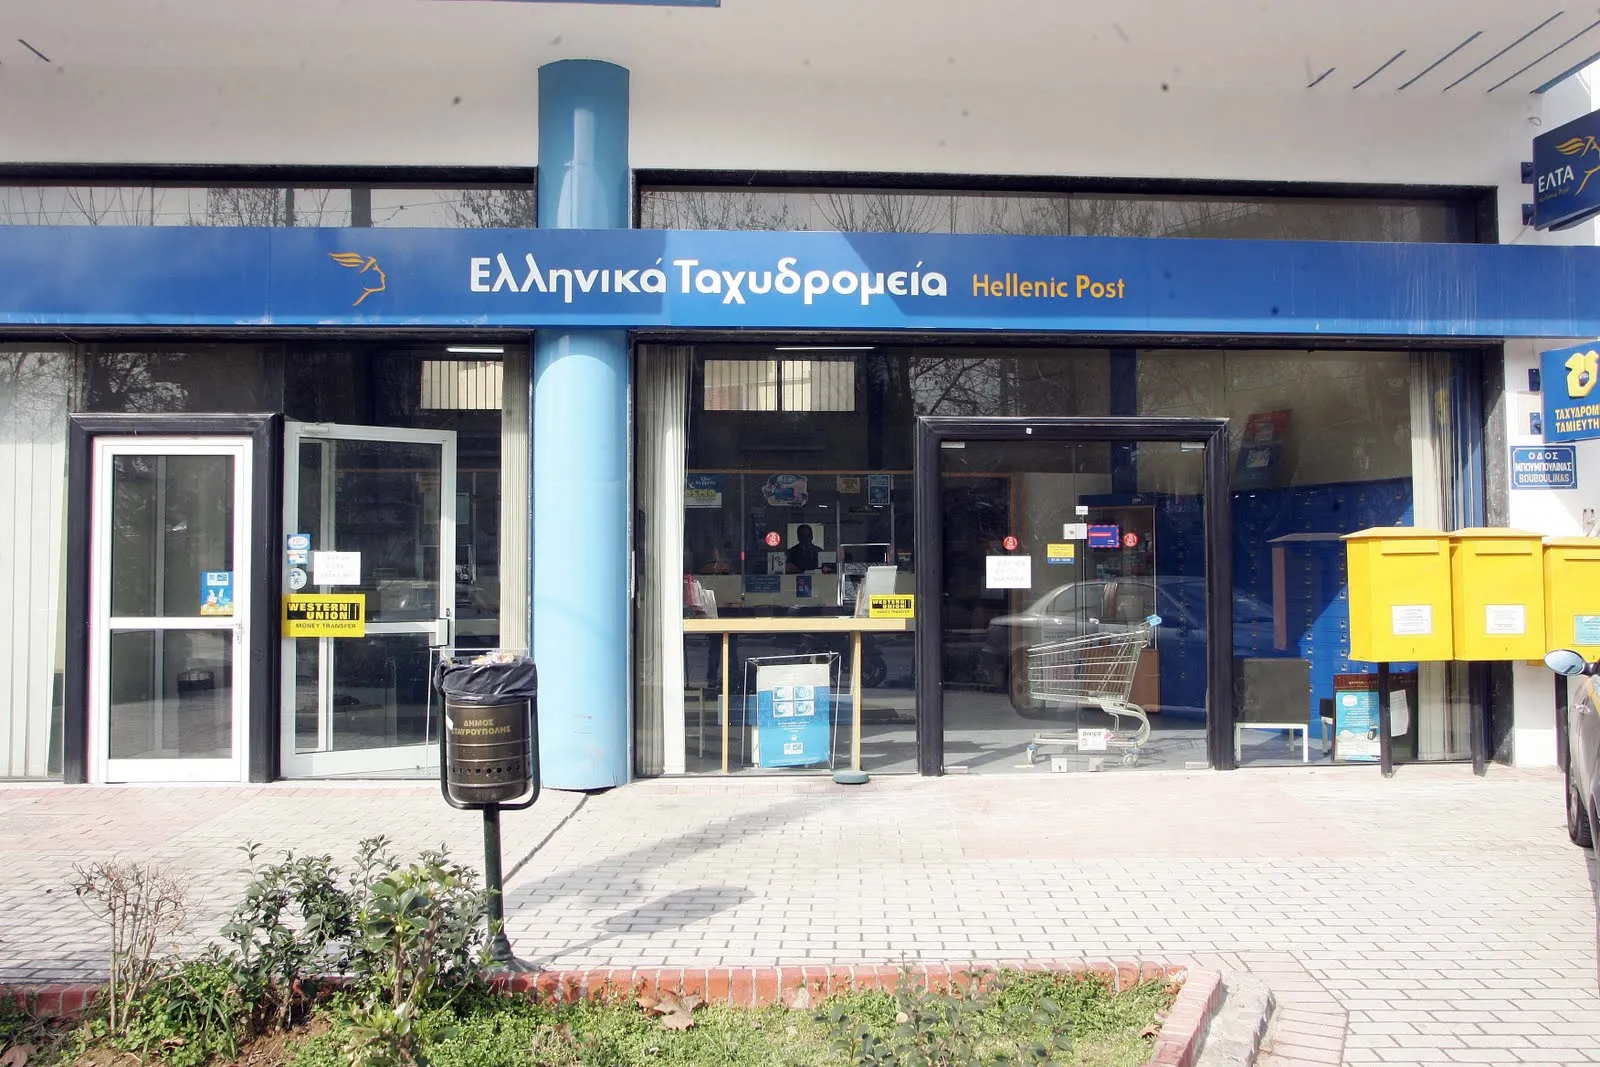 Εργασία: 18 προσλήψεις στα ΕΛΤΑ σε Άρτα, Ιωάννινα και Κέρκυρα